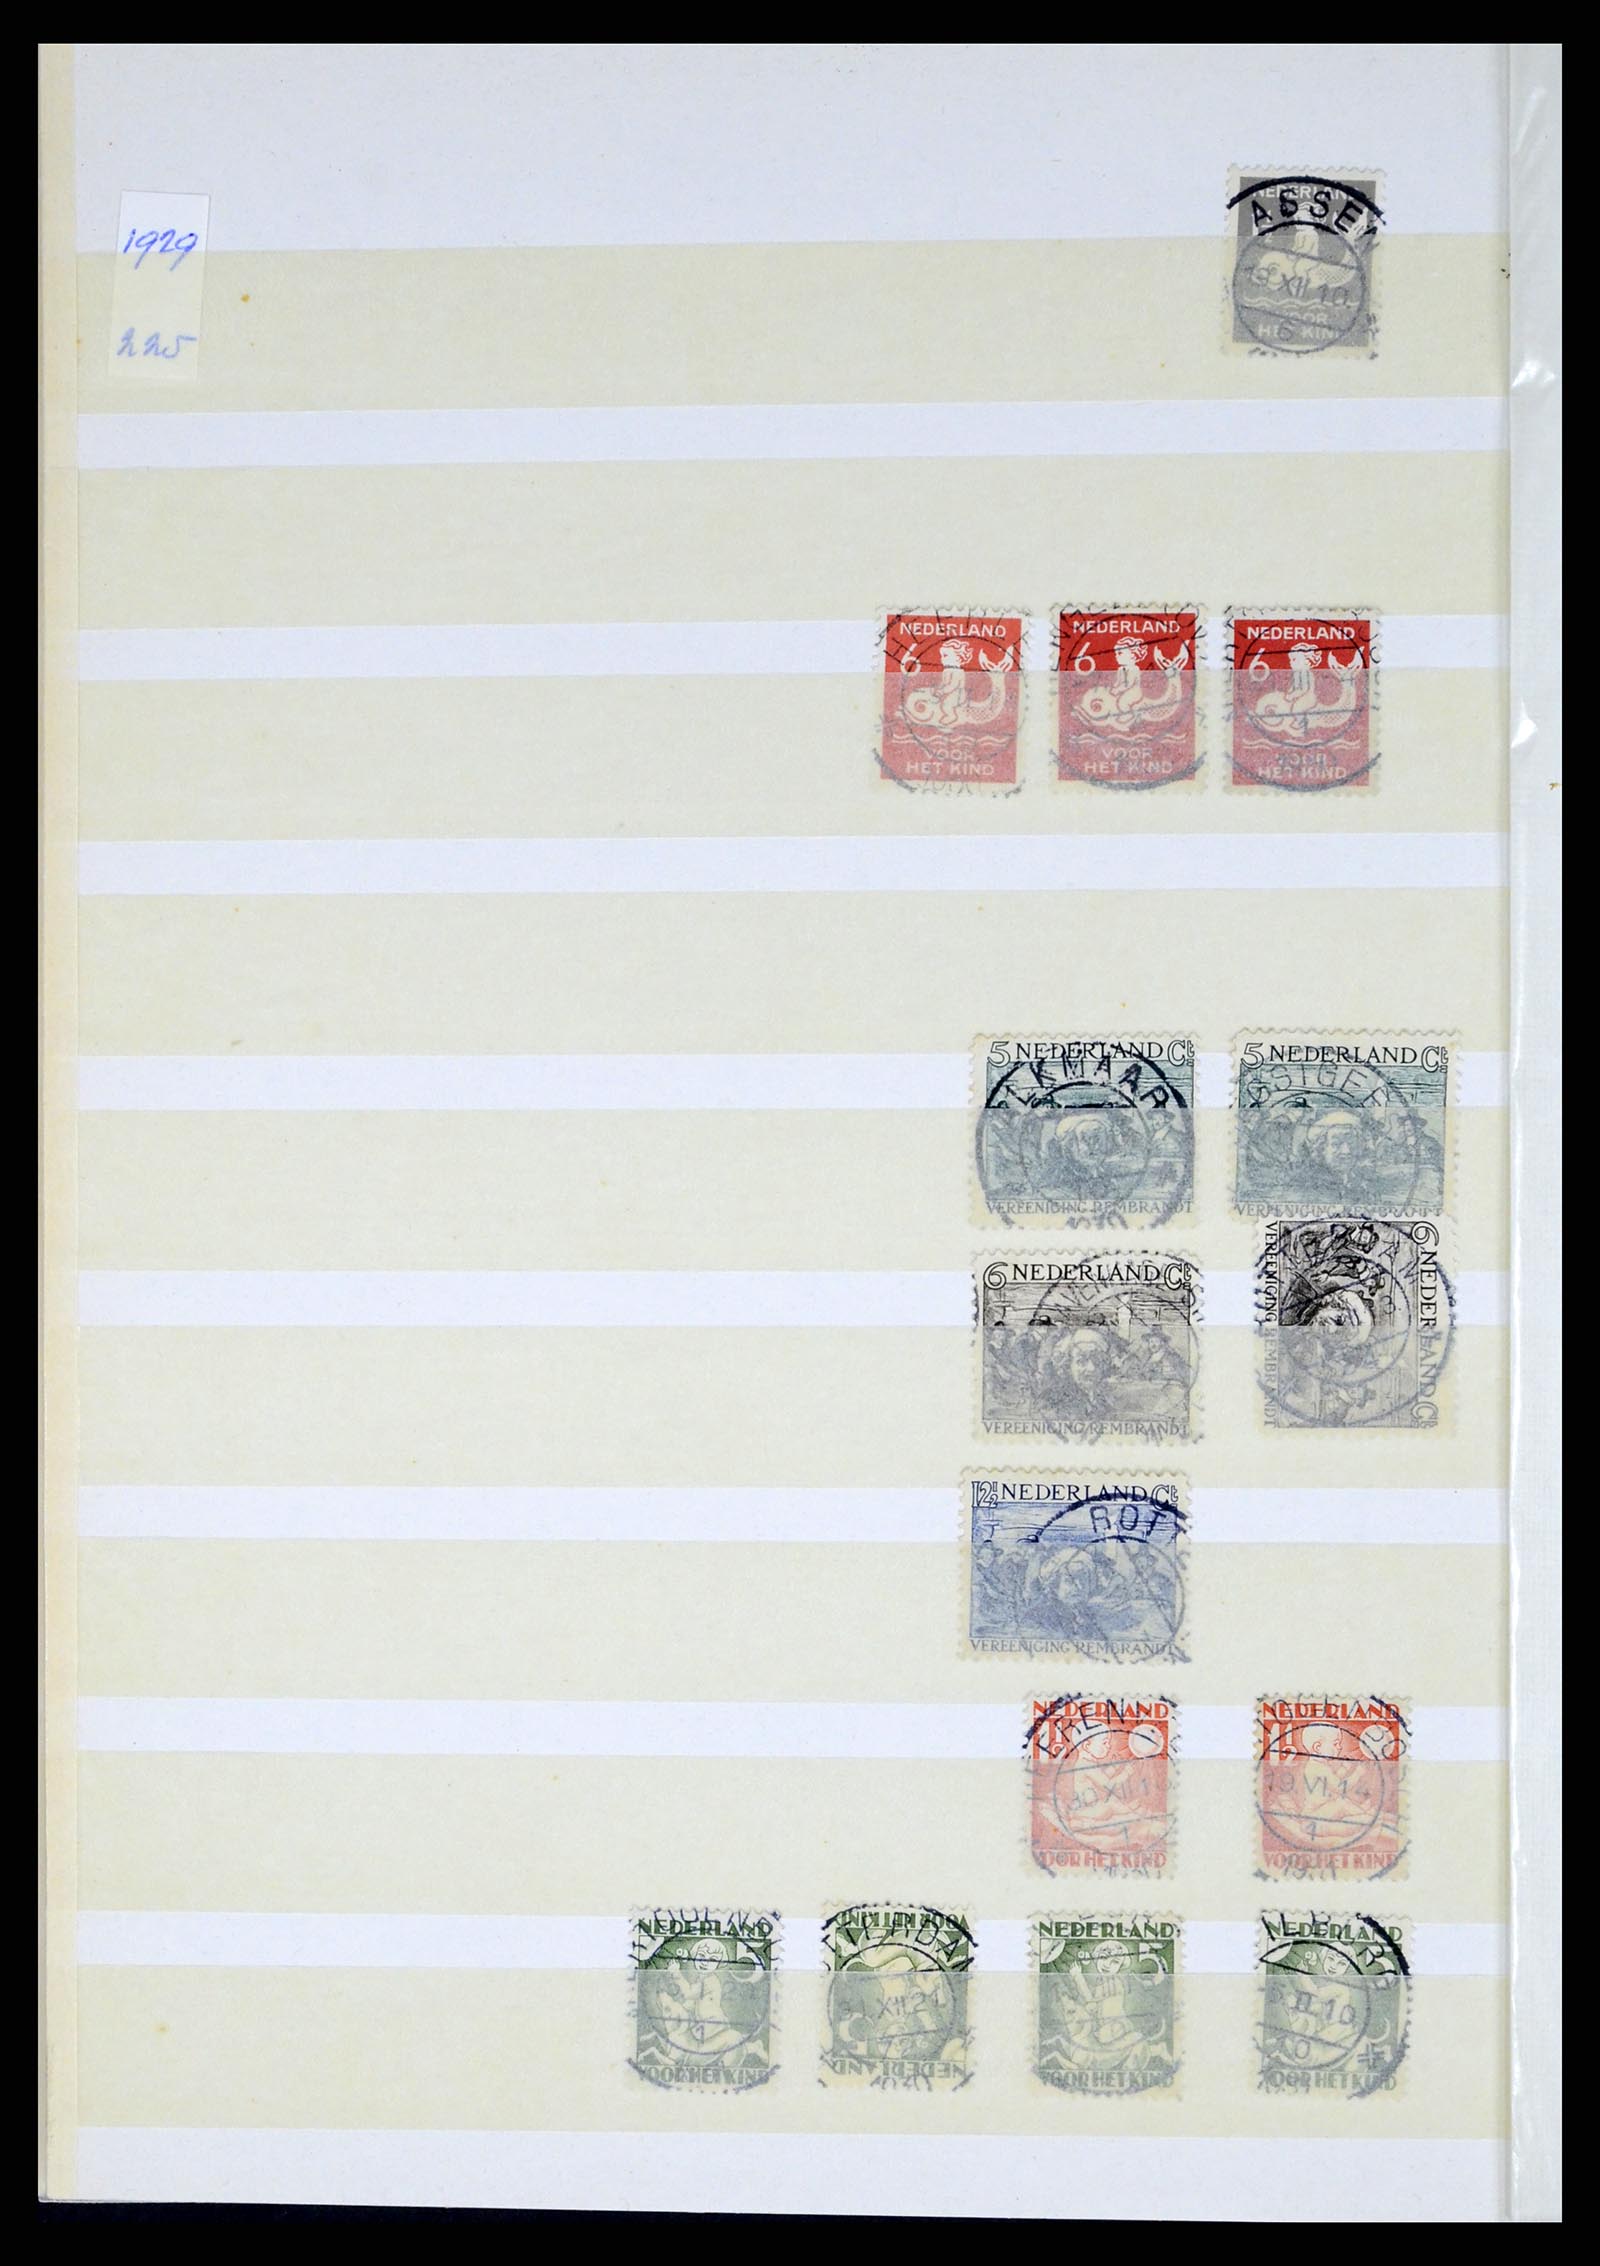 37424 014 - Postzegelverzameling 37424 Nederland kortebalk stempels.